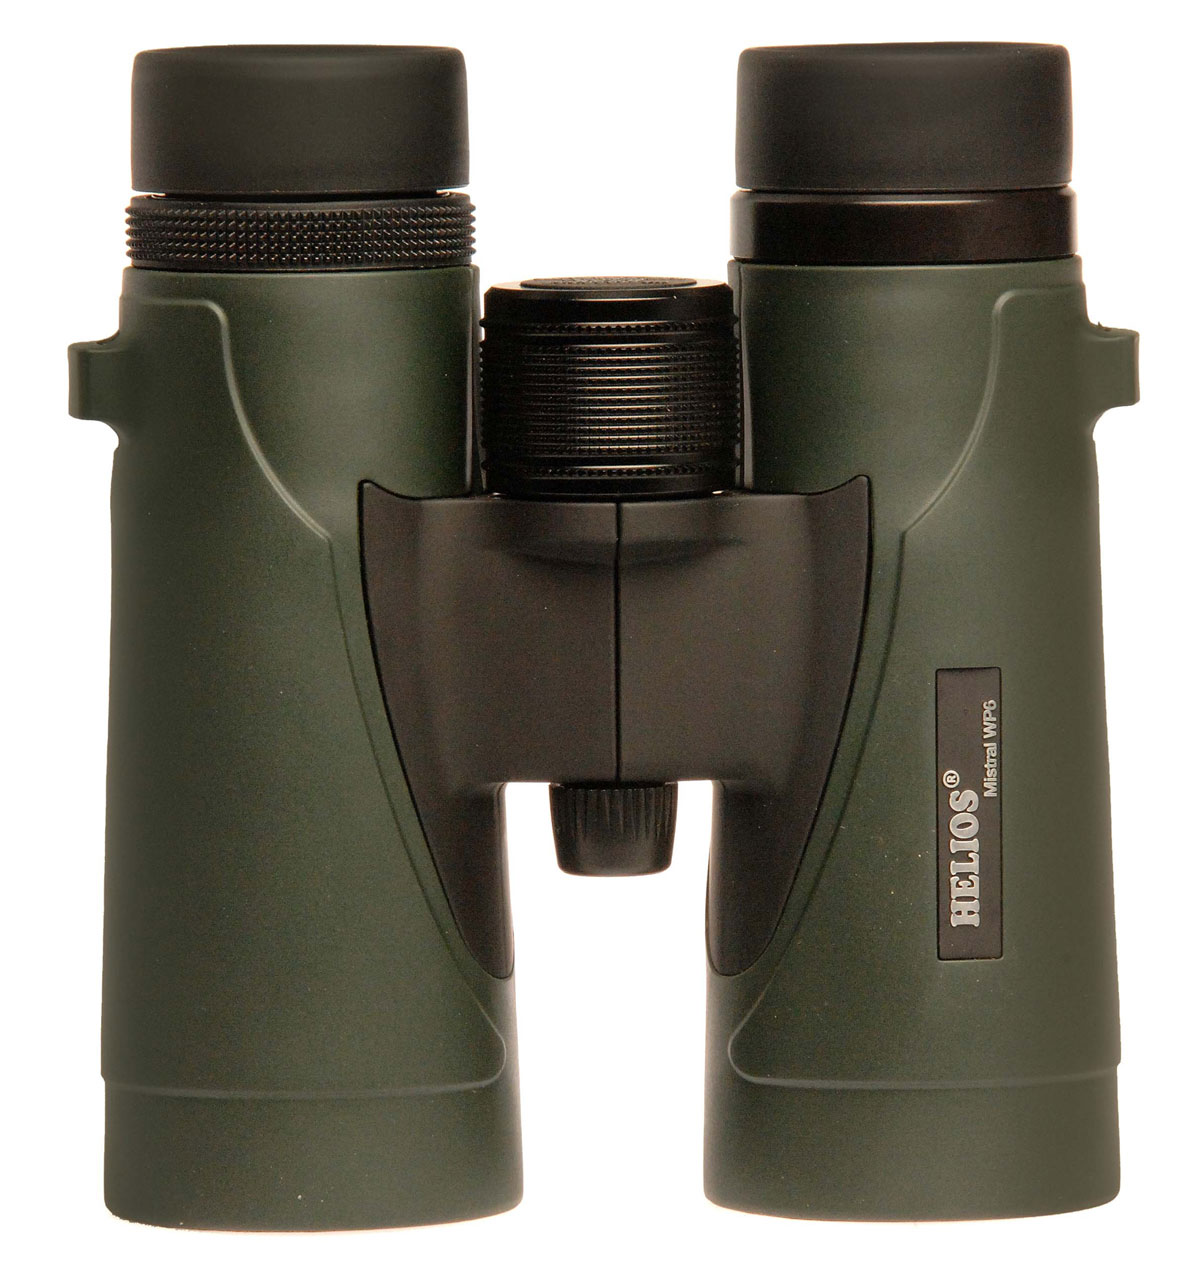 UK Stock Helios Mistral WP3 10x42 Waterproof Binoculars 